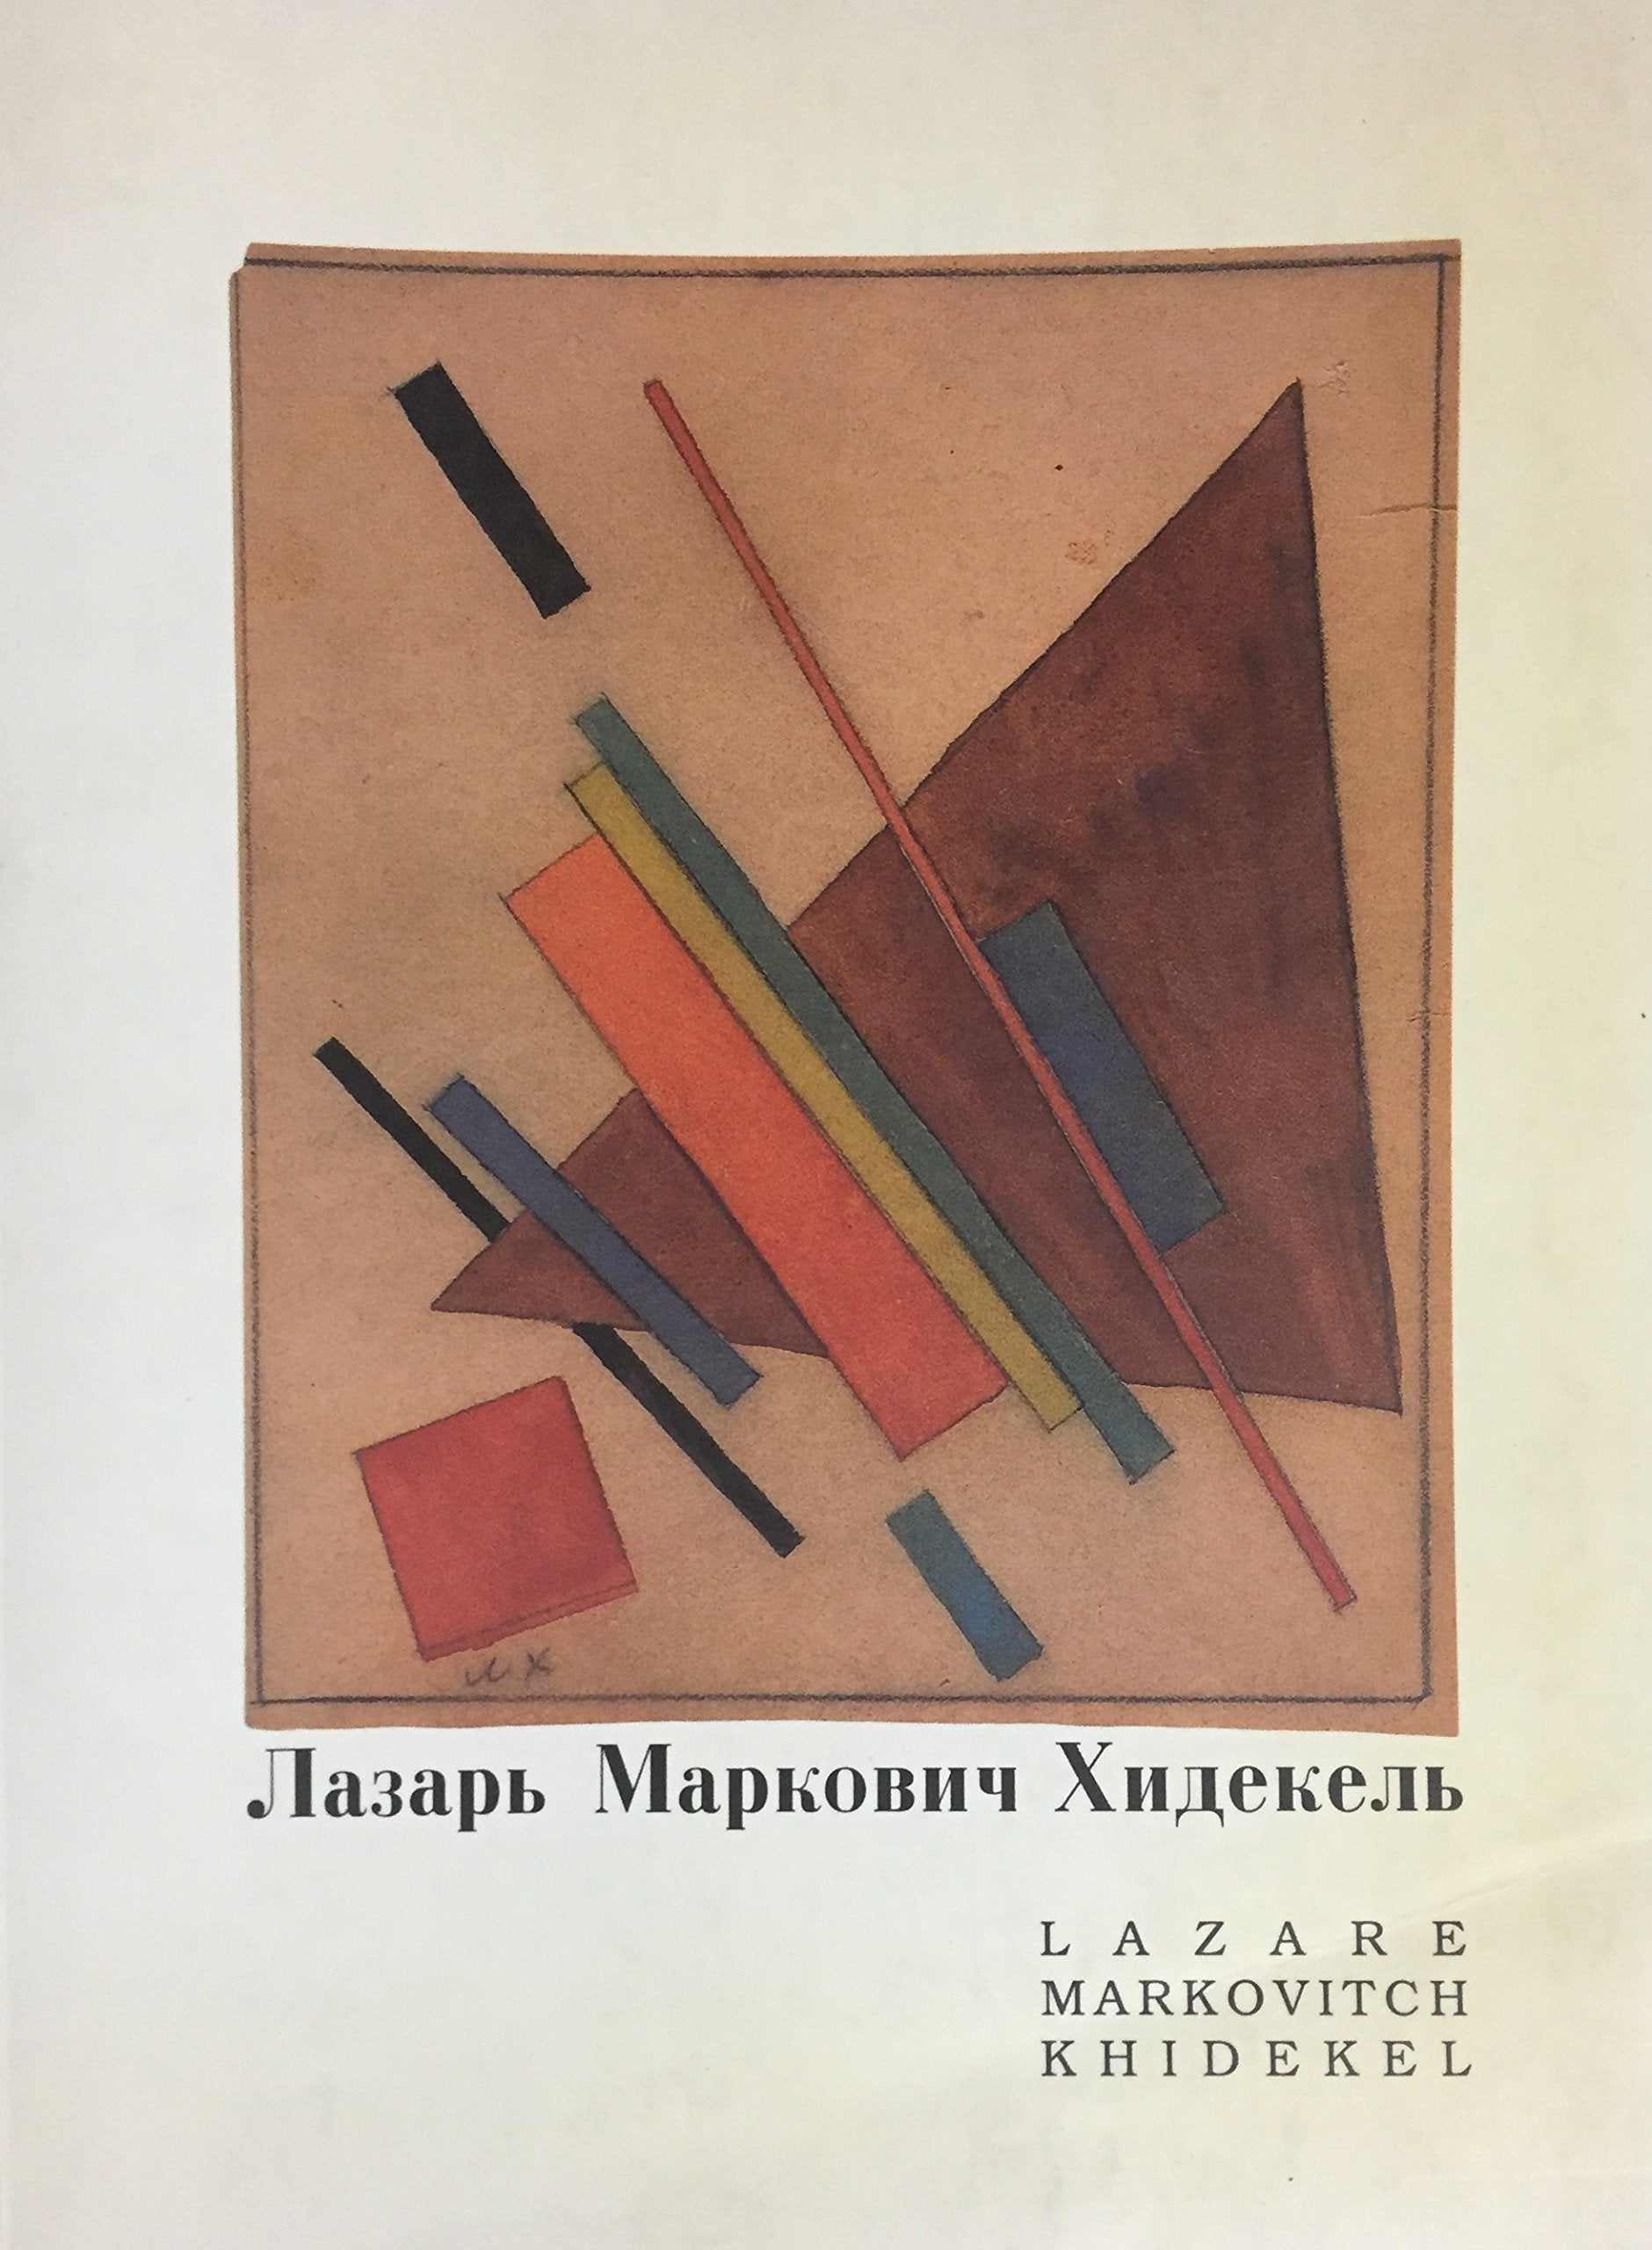 Livre ISBN 2980179140 Lazare Markovitch Khidekel : Oeuvres suprématistes / Suprematist works 1920 -1924